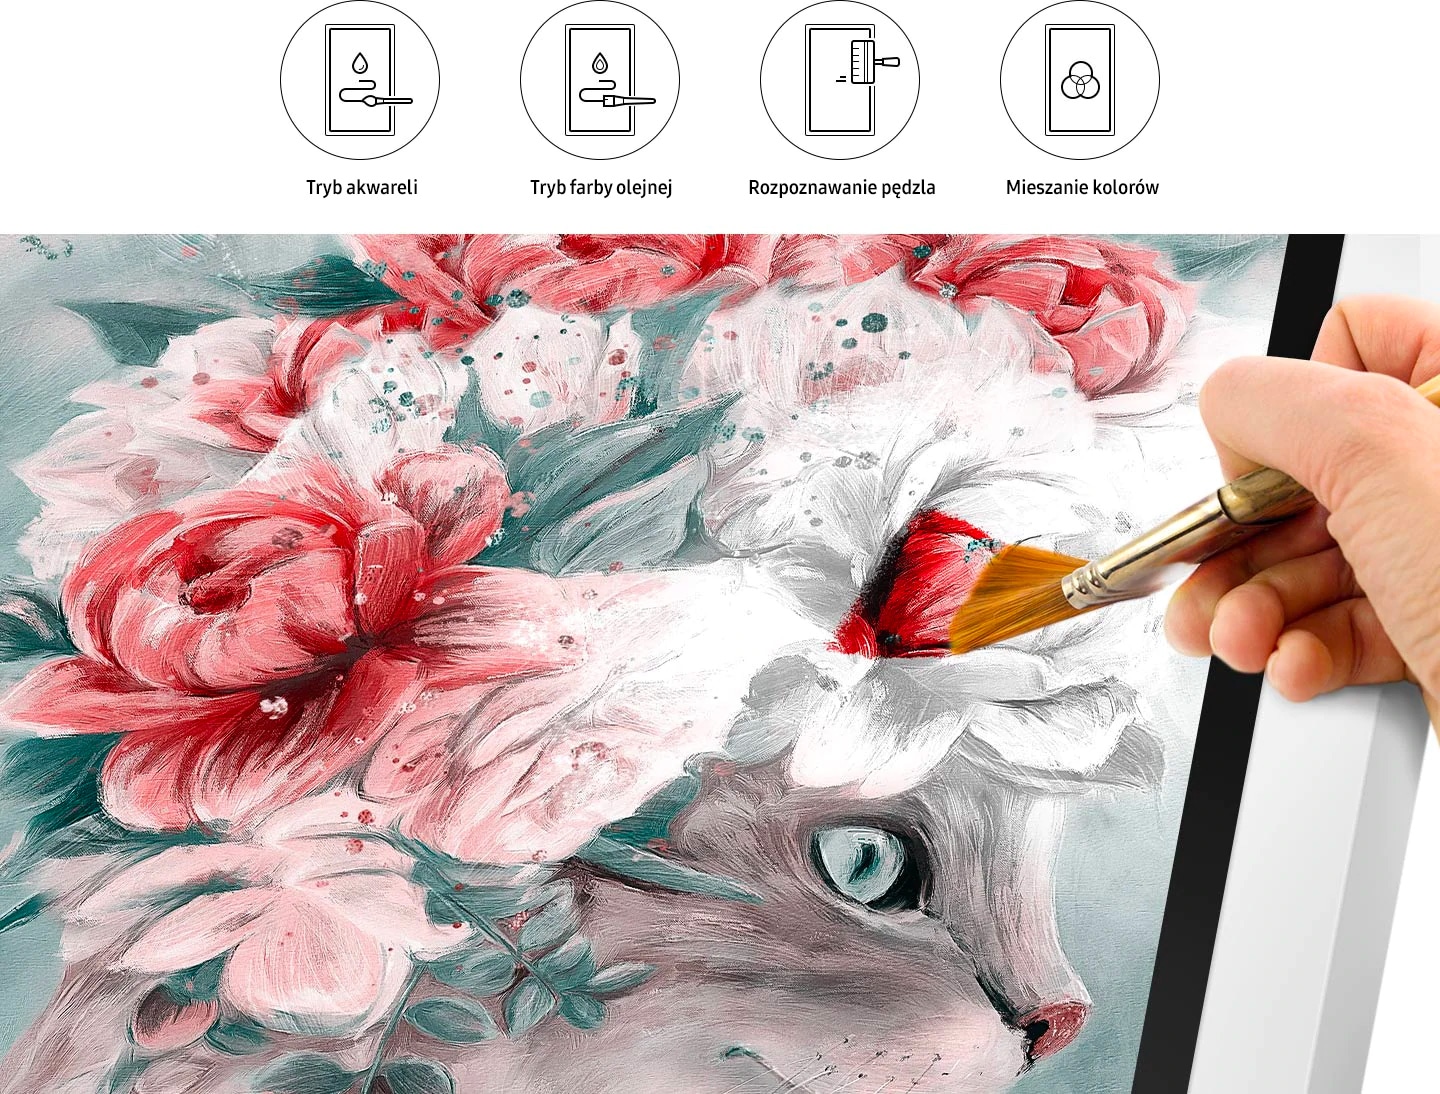 Możesz malować obrazy z Trybem pędzla na ekranie Samsung Flip 55 cali - wybierz styl akwareli albo farb olejnych